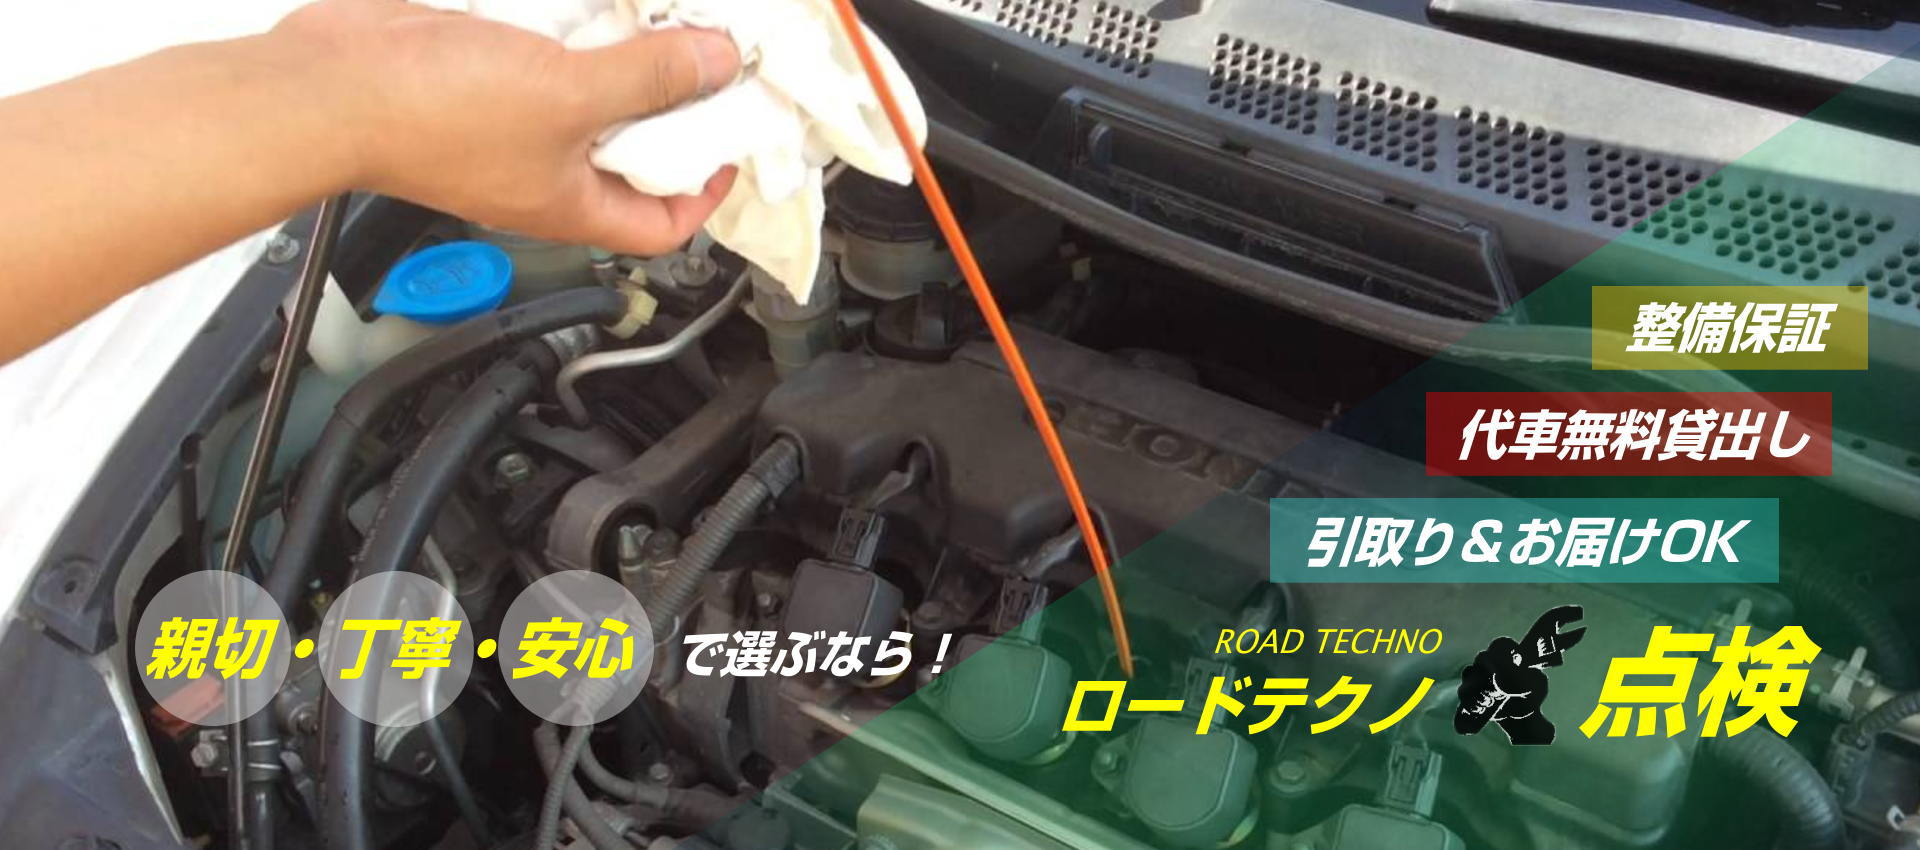 島根県/車の修理/整備/点検